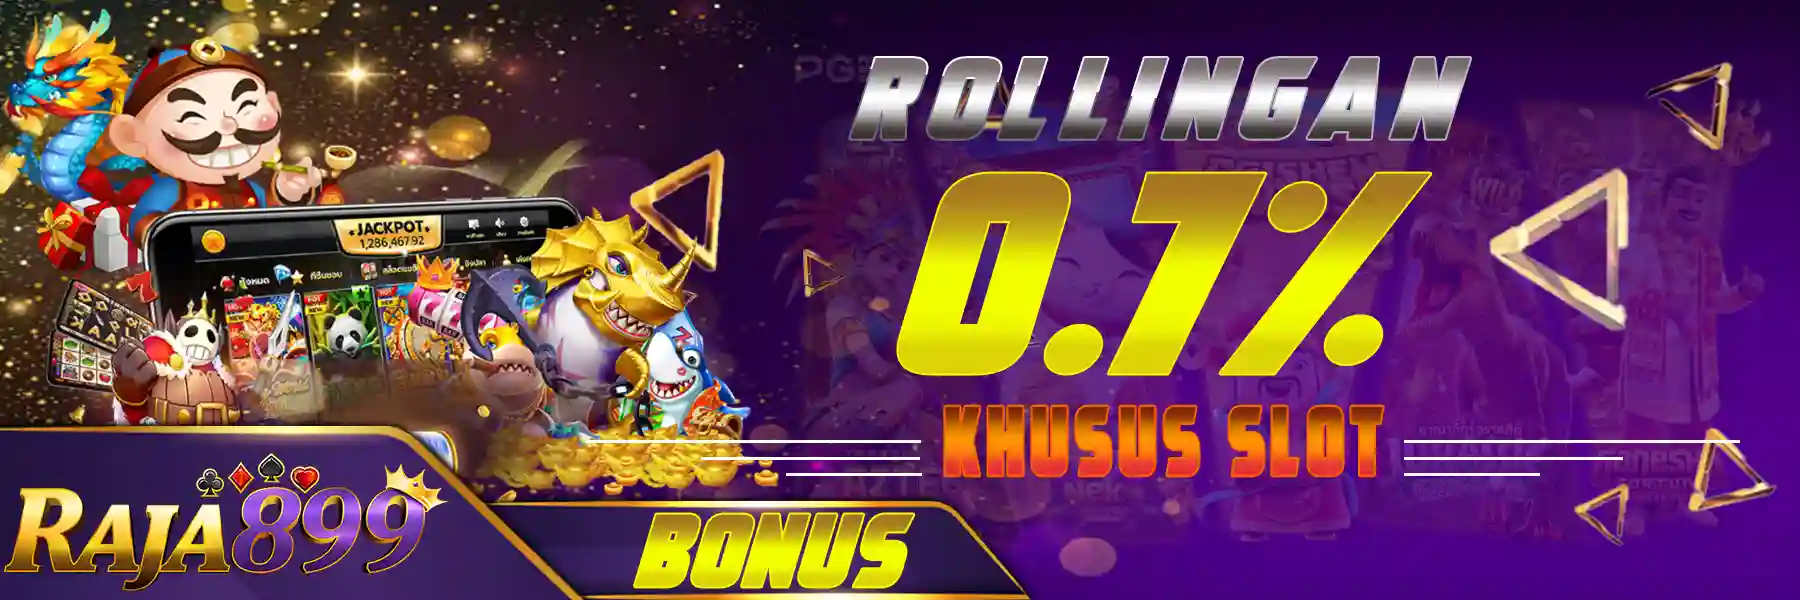 Bonus Rollingan Slot Game 0.7% Setiap Hari Kamis